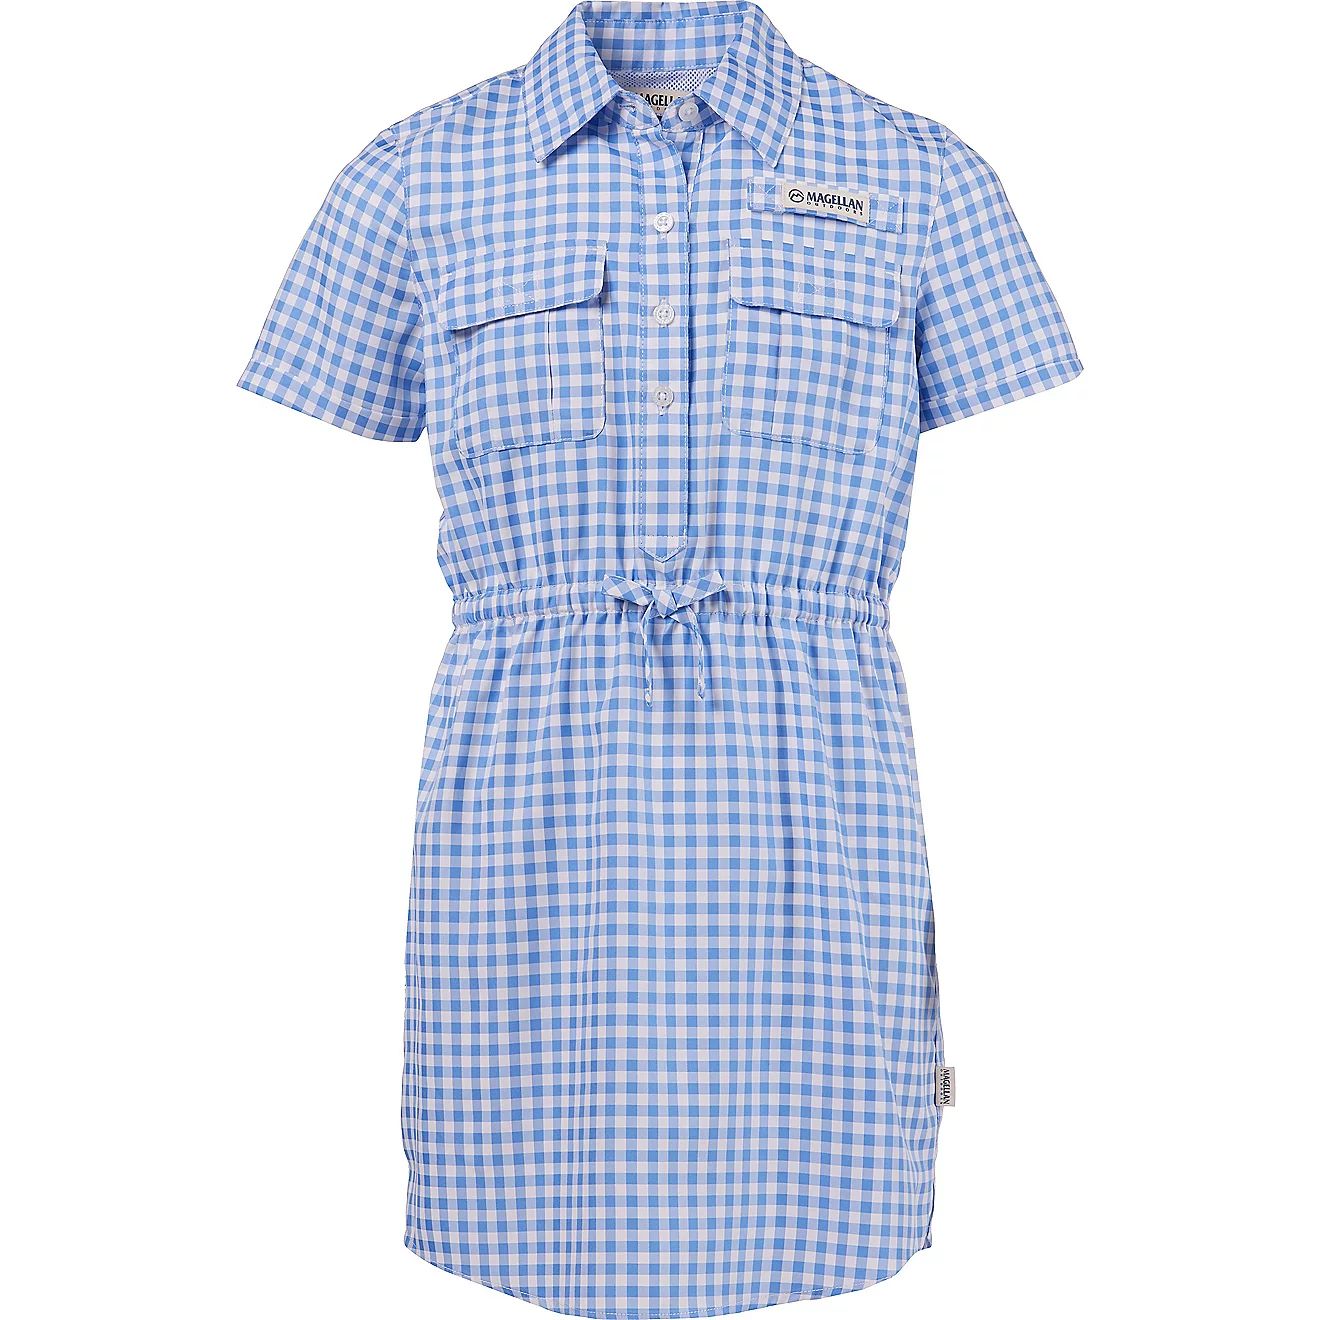 Magellan Outdoors Girls' Seersucker Short Sleeve Fishing Shirt Dress | Academy | Academy Sports + Outdoors